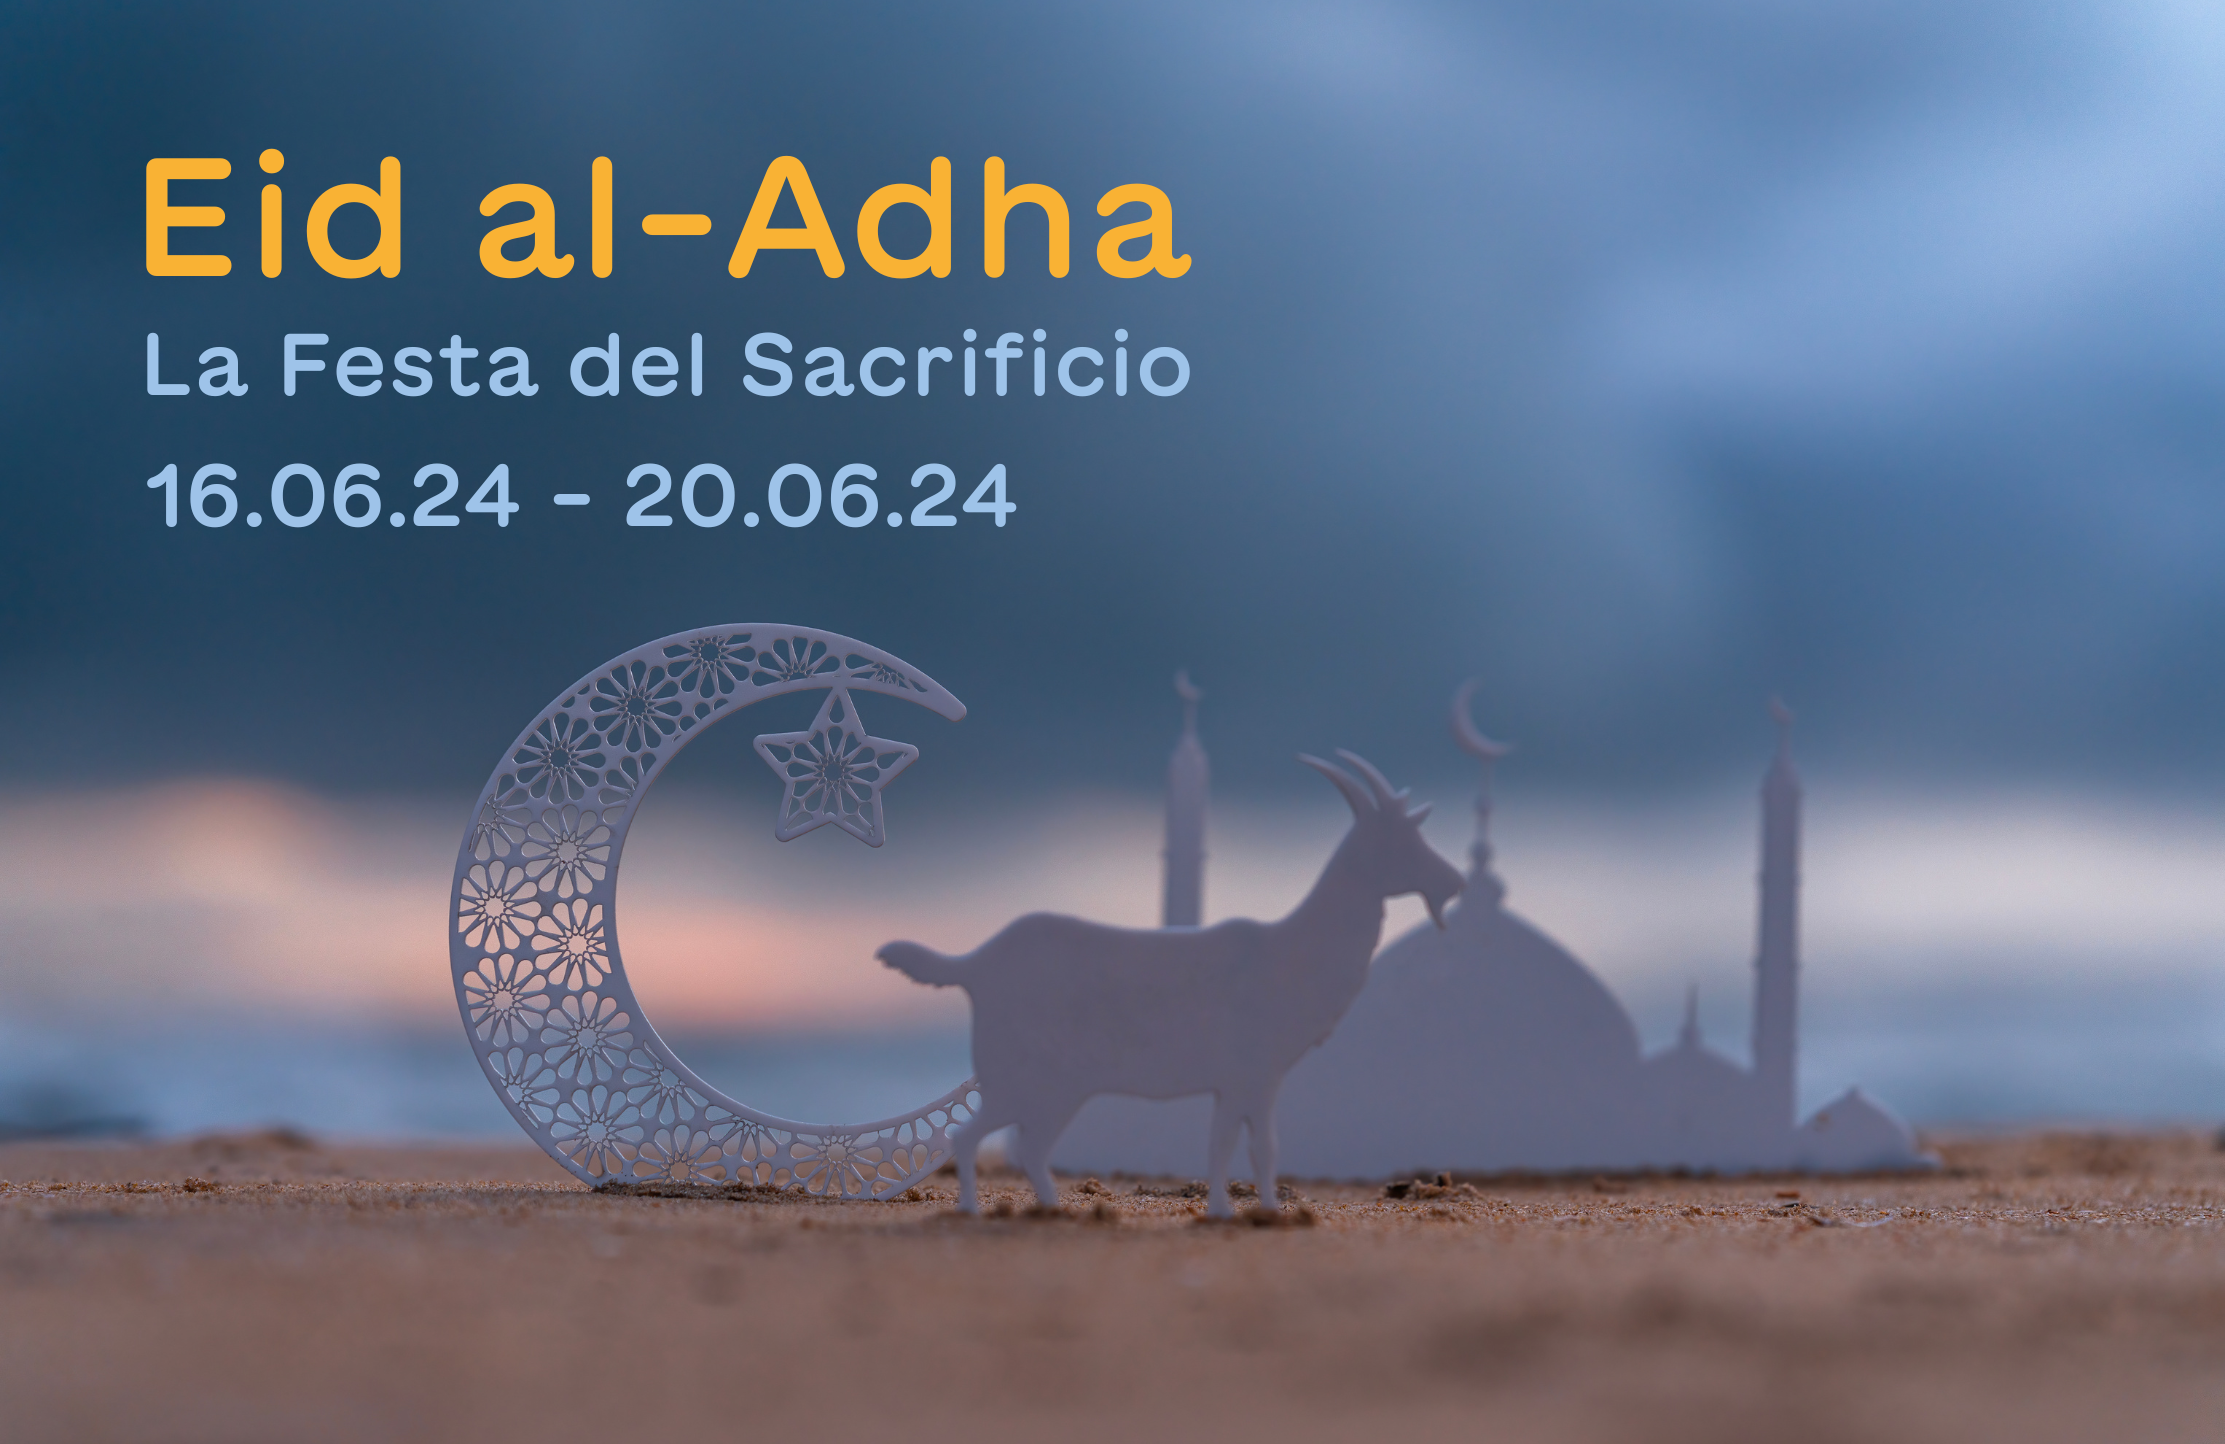 Eid al-Adha: Festa del Sacrificio